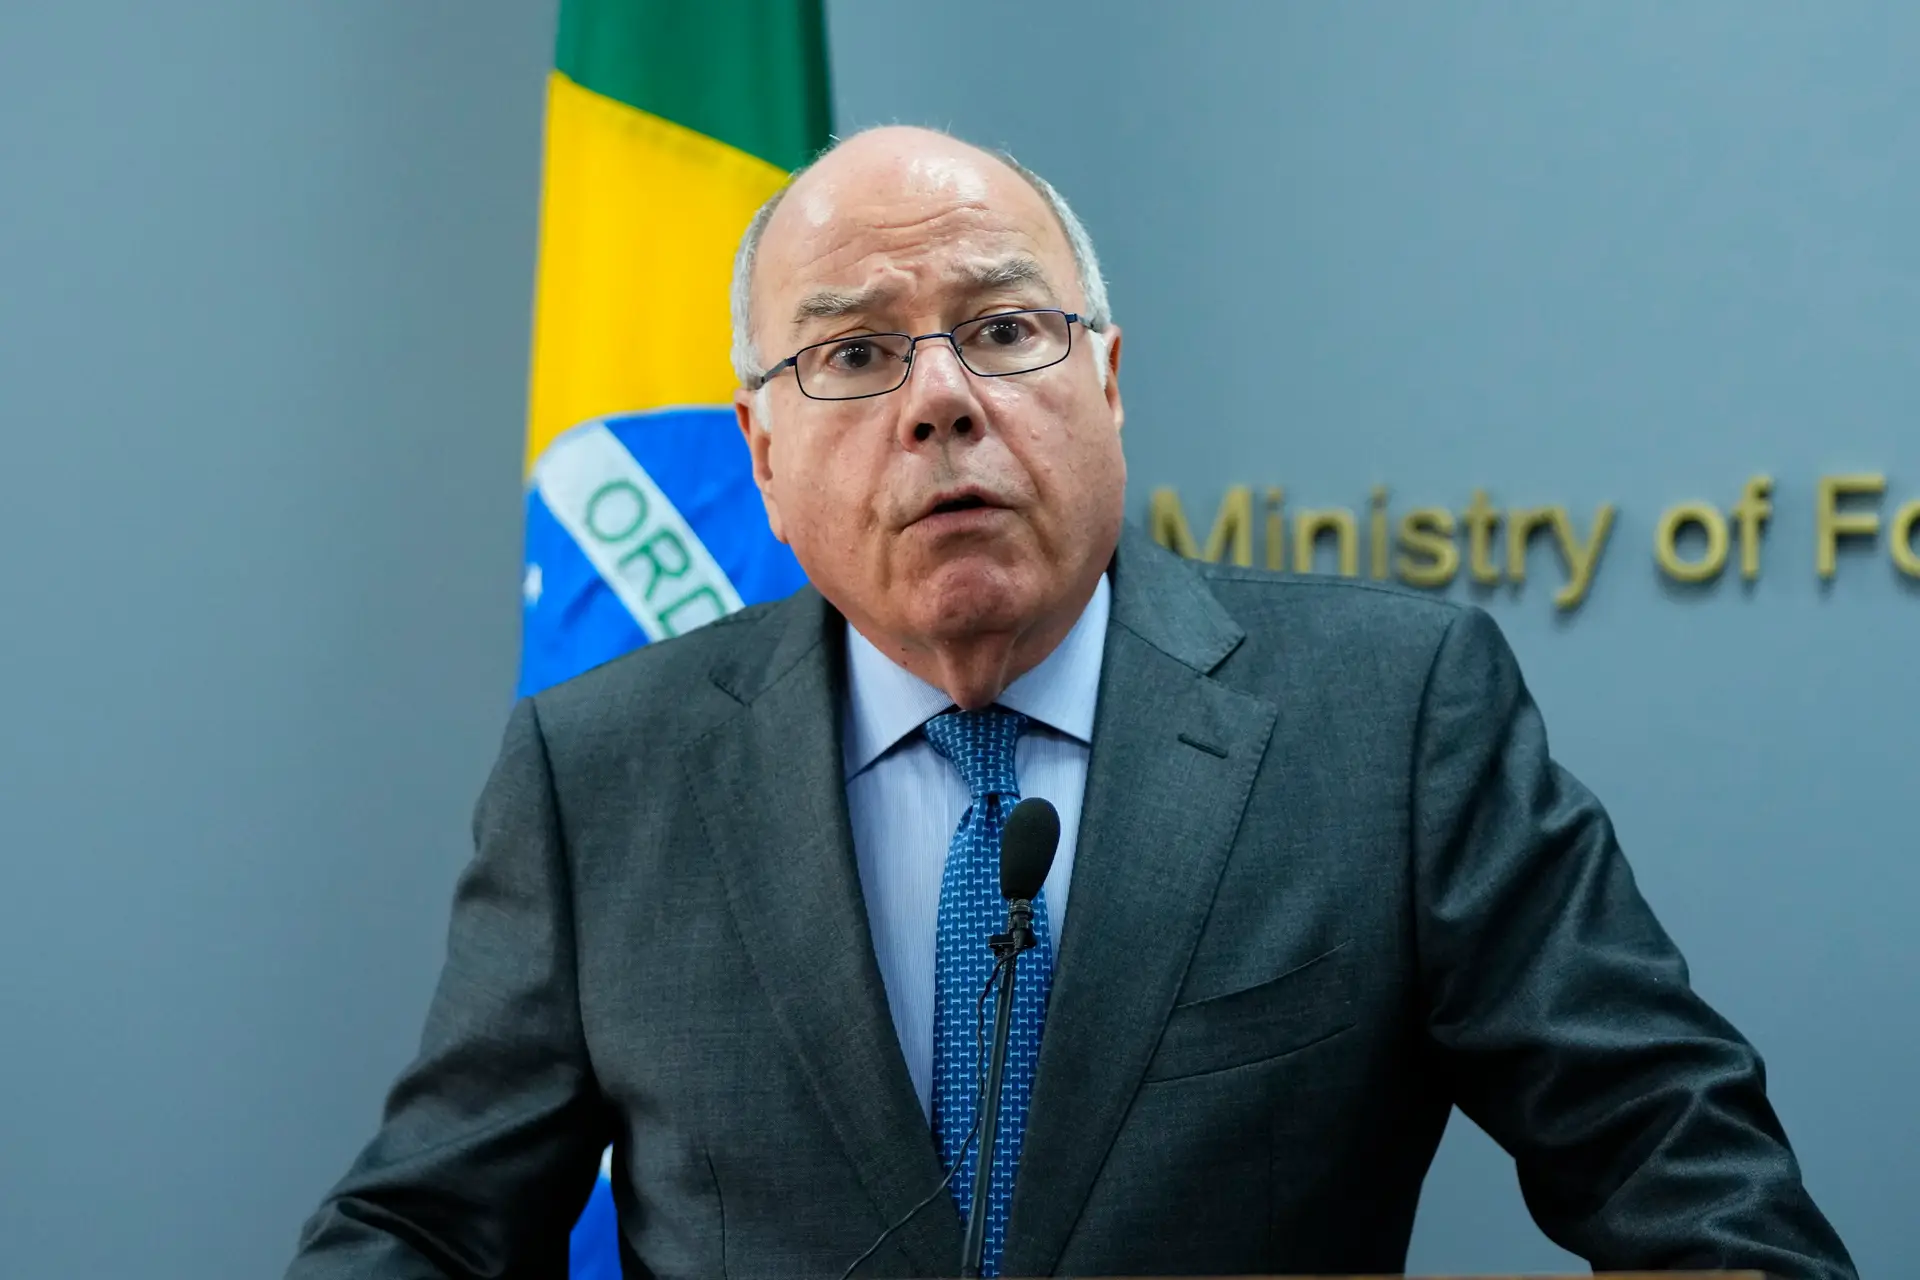 Ministro brasileiro não comenta palavras de Marcelo, mas defende "política de reparação" colonial